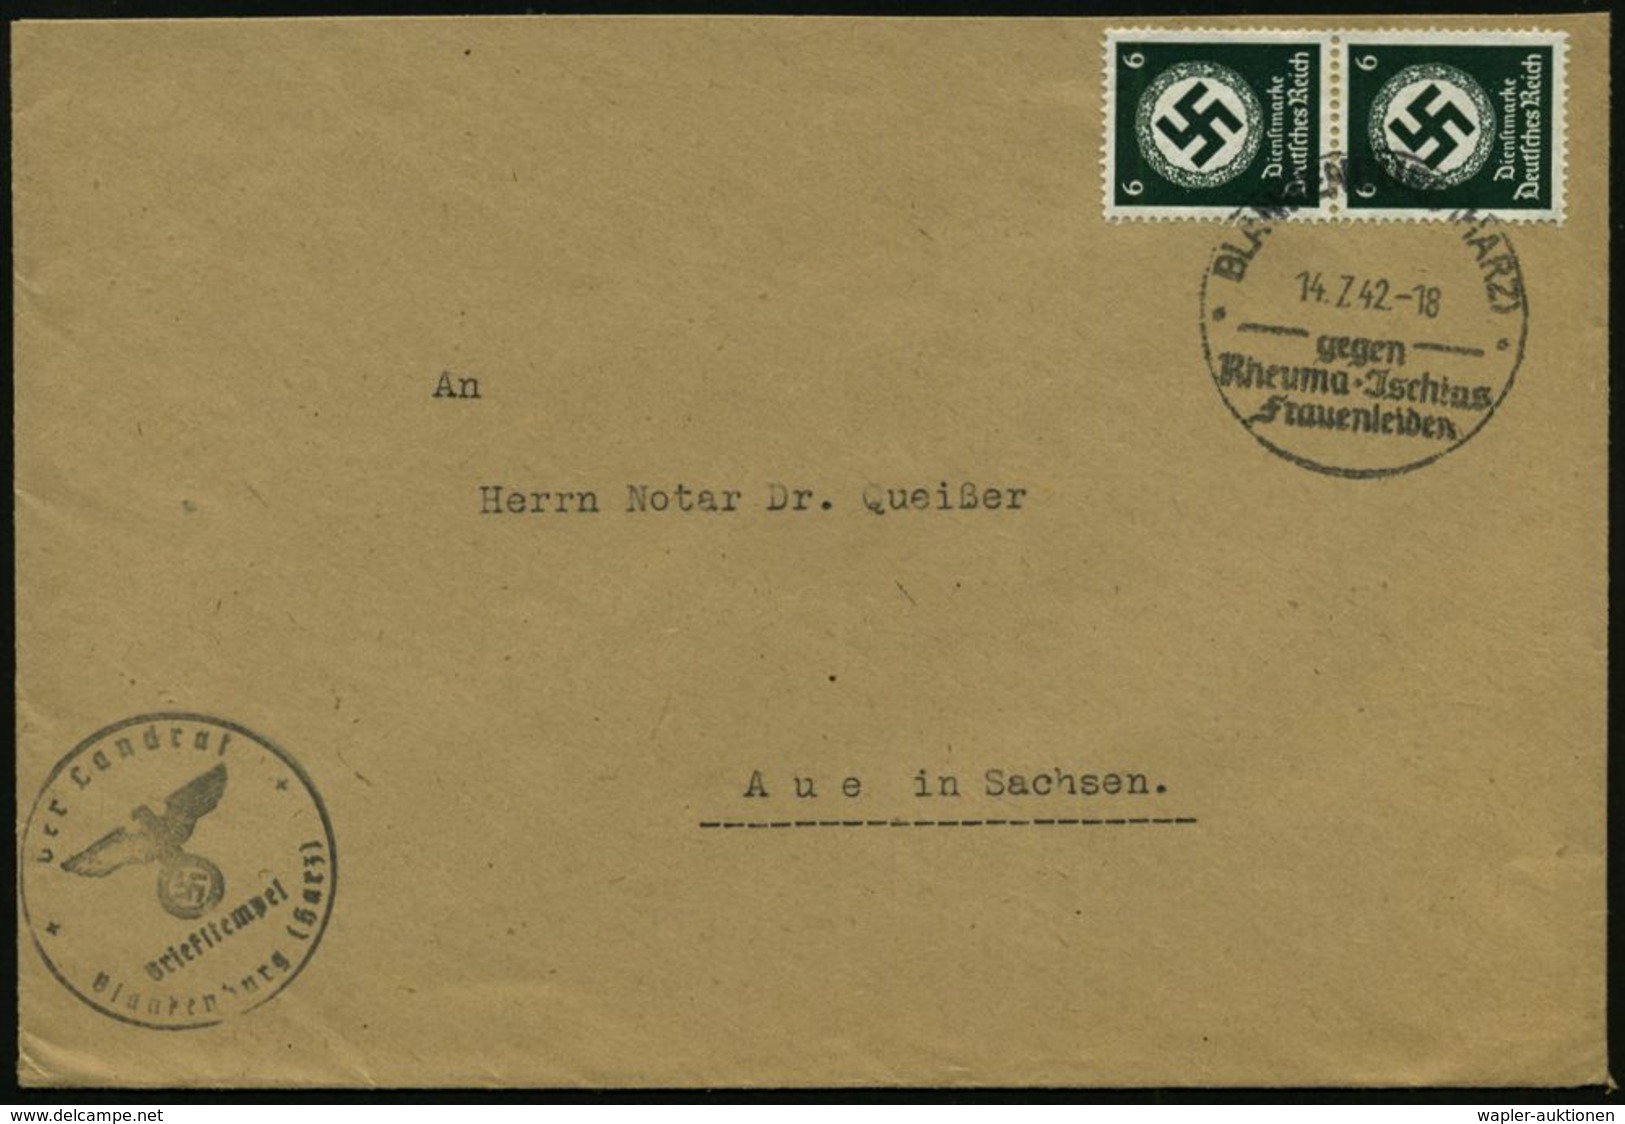 RHEUMATISMUS : BLANKENBURG (HARZ)/ Gegen/ Rheuma-Jschias/ Frauenleiden 1942 (14.7.) HWSt Auf Paar 6 Pf. Behördendienst + - Disease